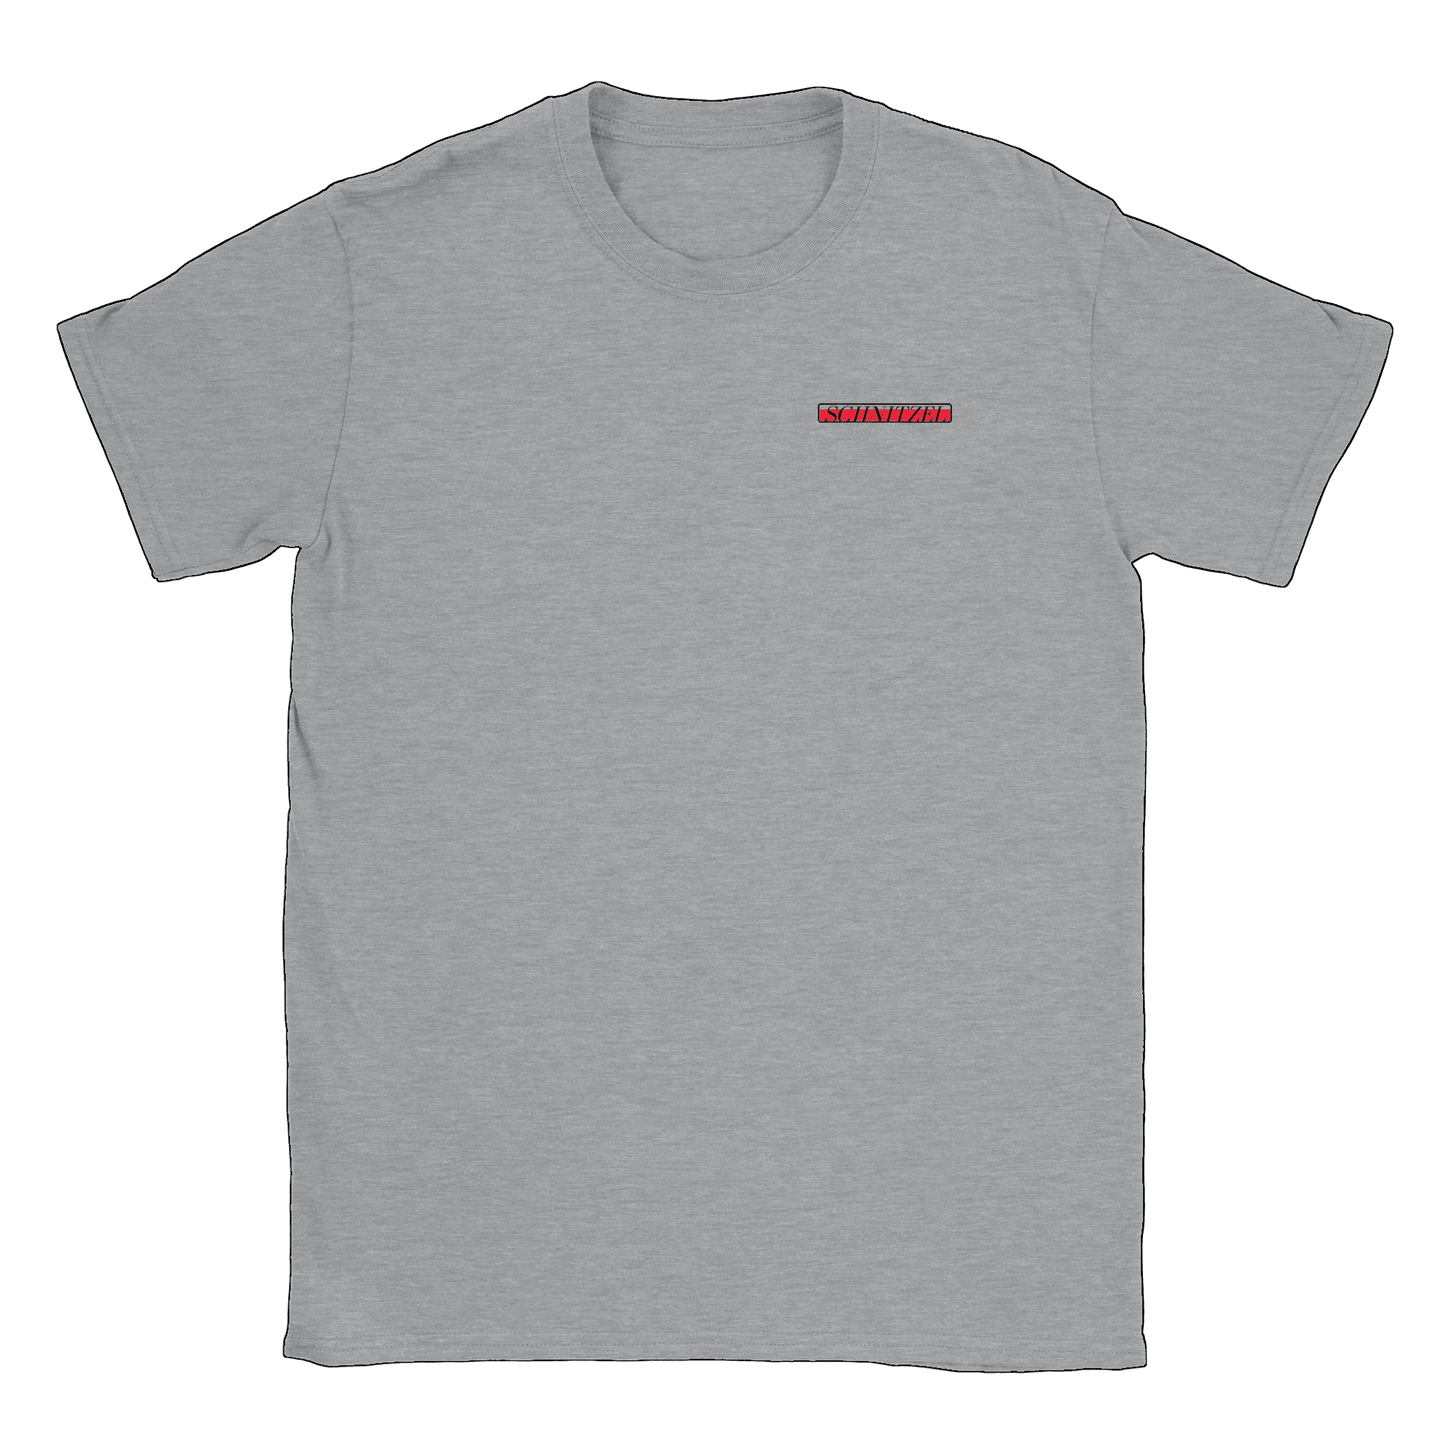 Schnitzel - T-shirt Sports Grey